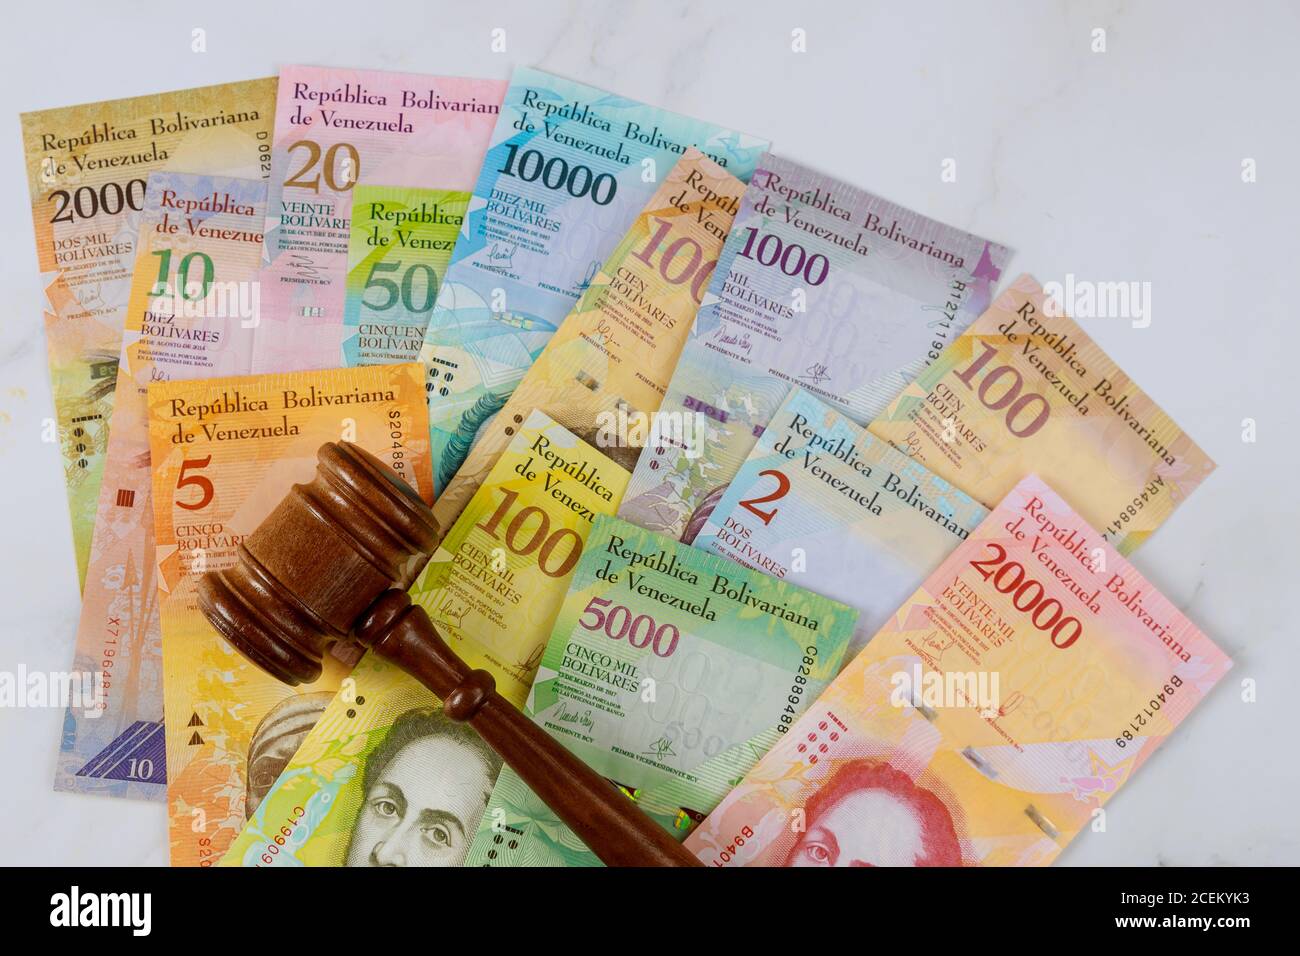 Richter gavel Gesetz venezolanischen Bolivar Banknote mit verschiedenen Währung Papierrechnungen. Recht Justizbehörde. Stockfoto